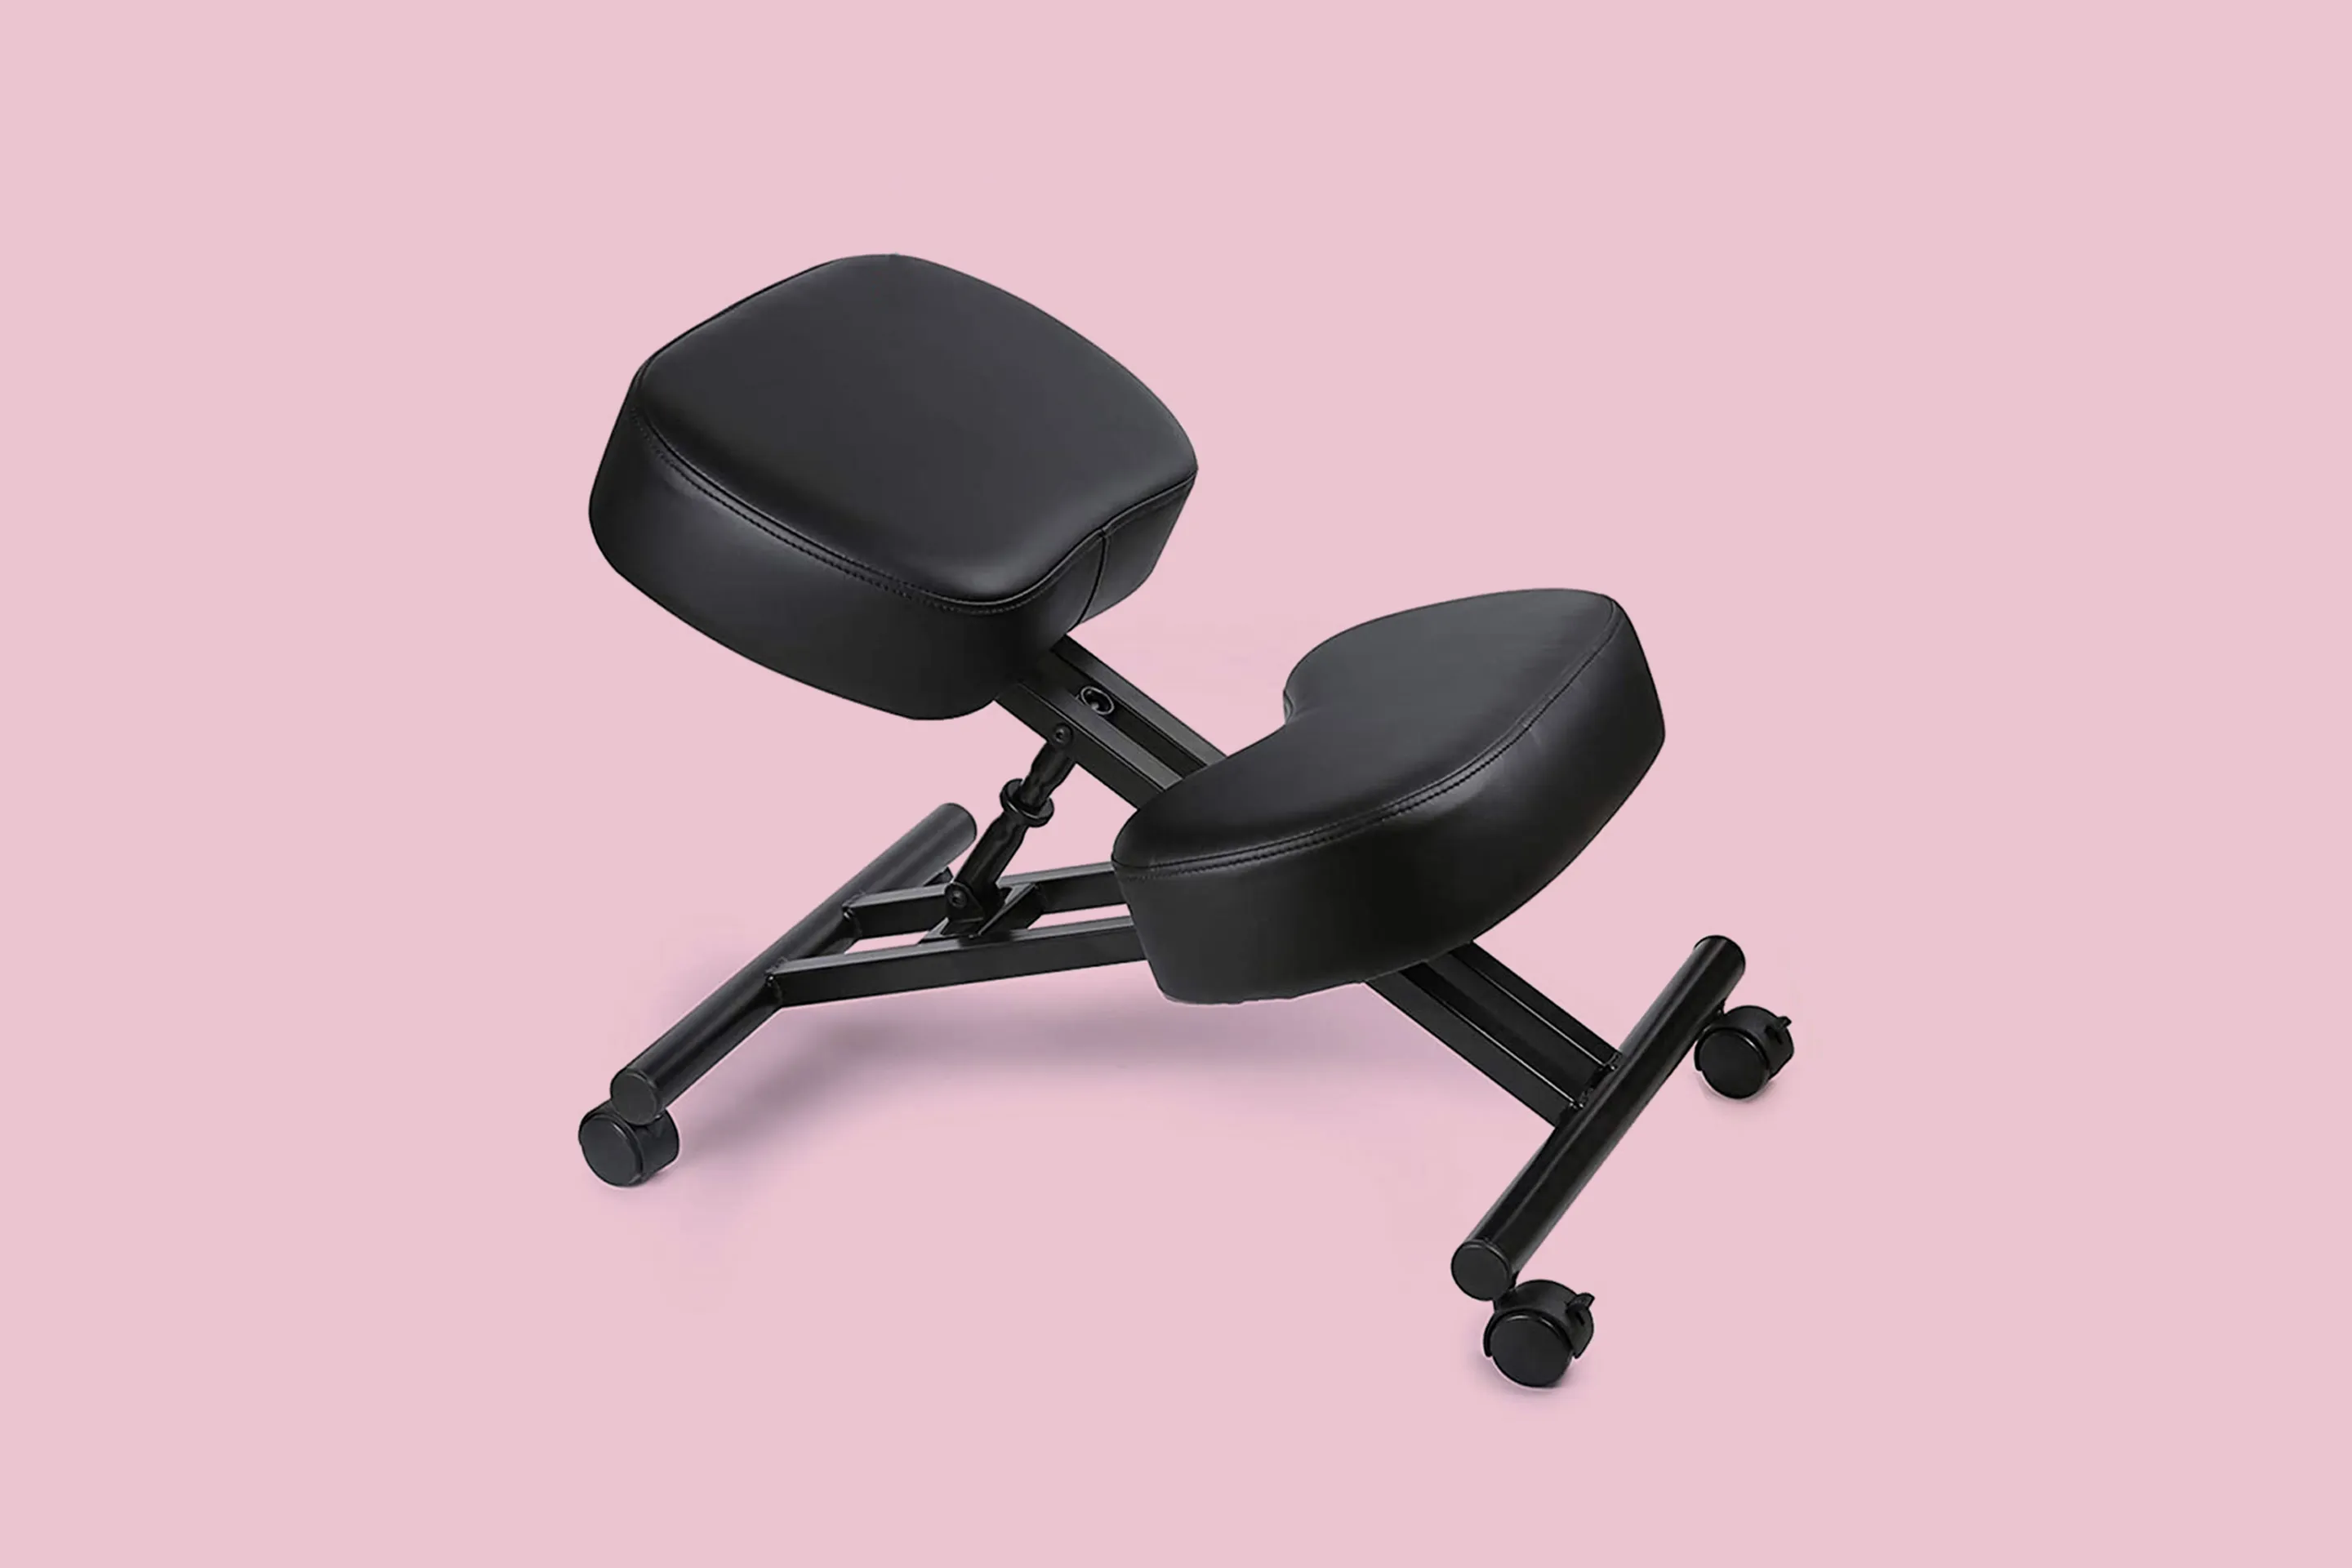 https://img.money.com/2021/05/Shopping-DRAGONN-VIVO-Ergonomic-Kneeling-Chair.jpg